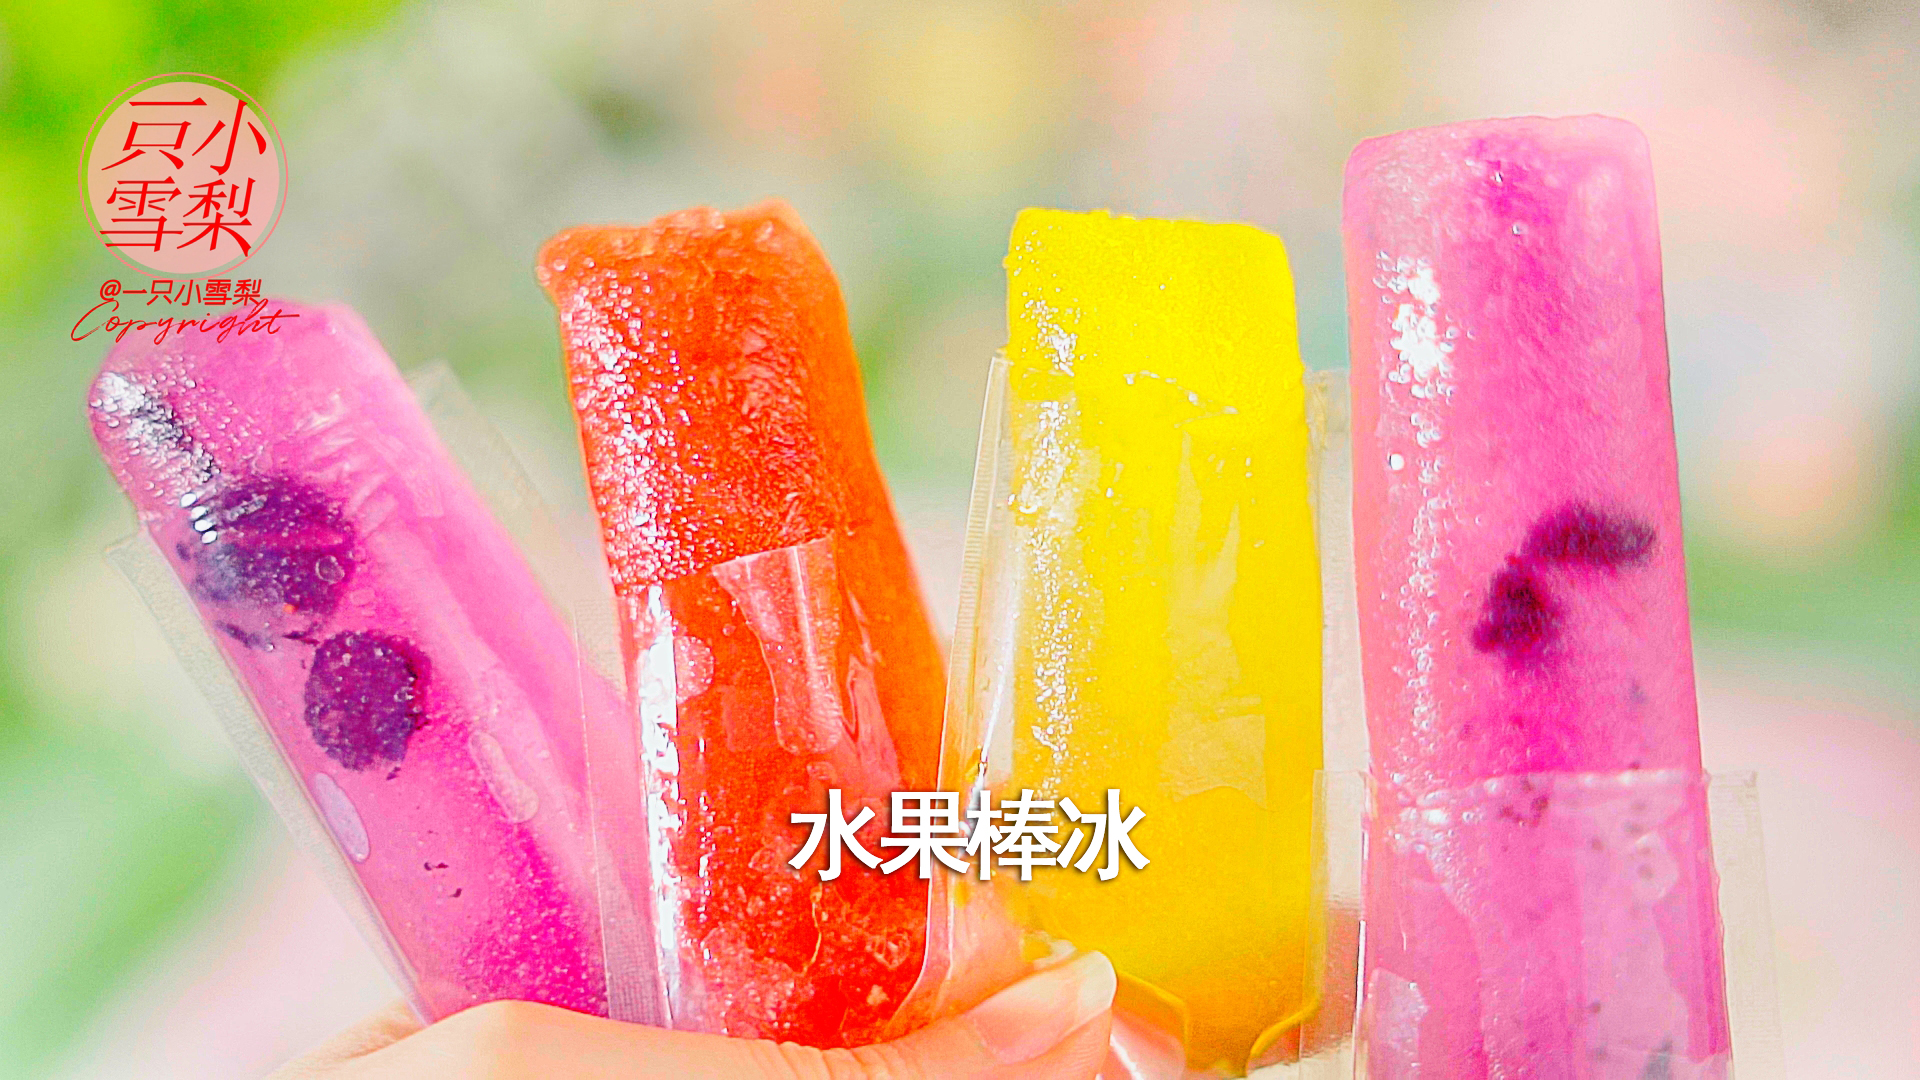 夏日必备 低卡水果棒冰 水果冰棍 #浓情端午 粽粽有赏#